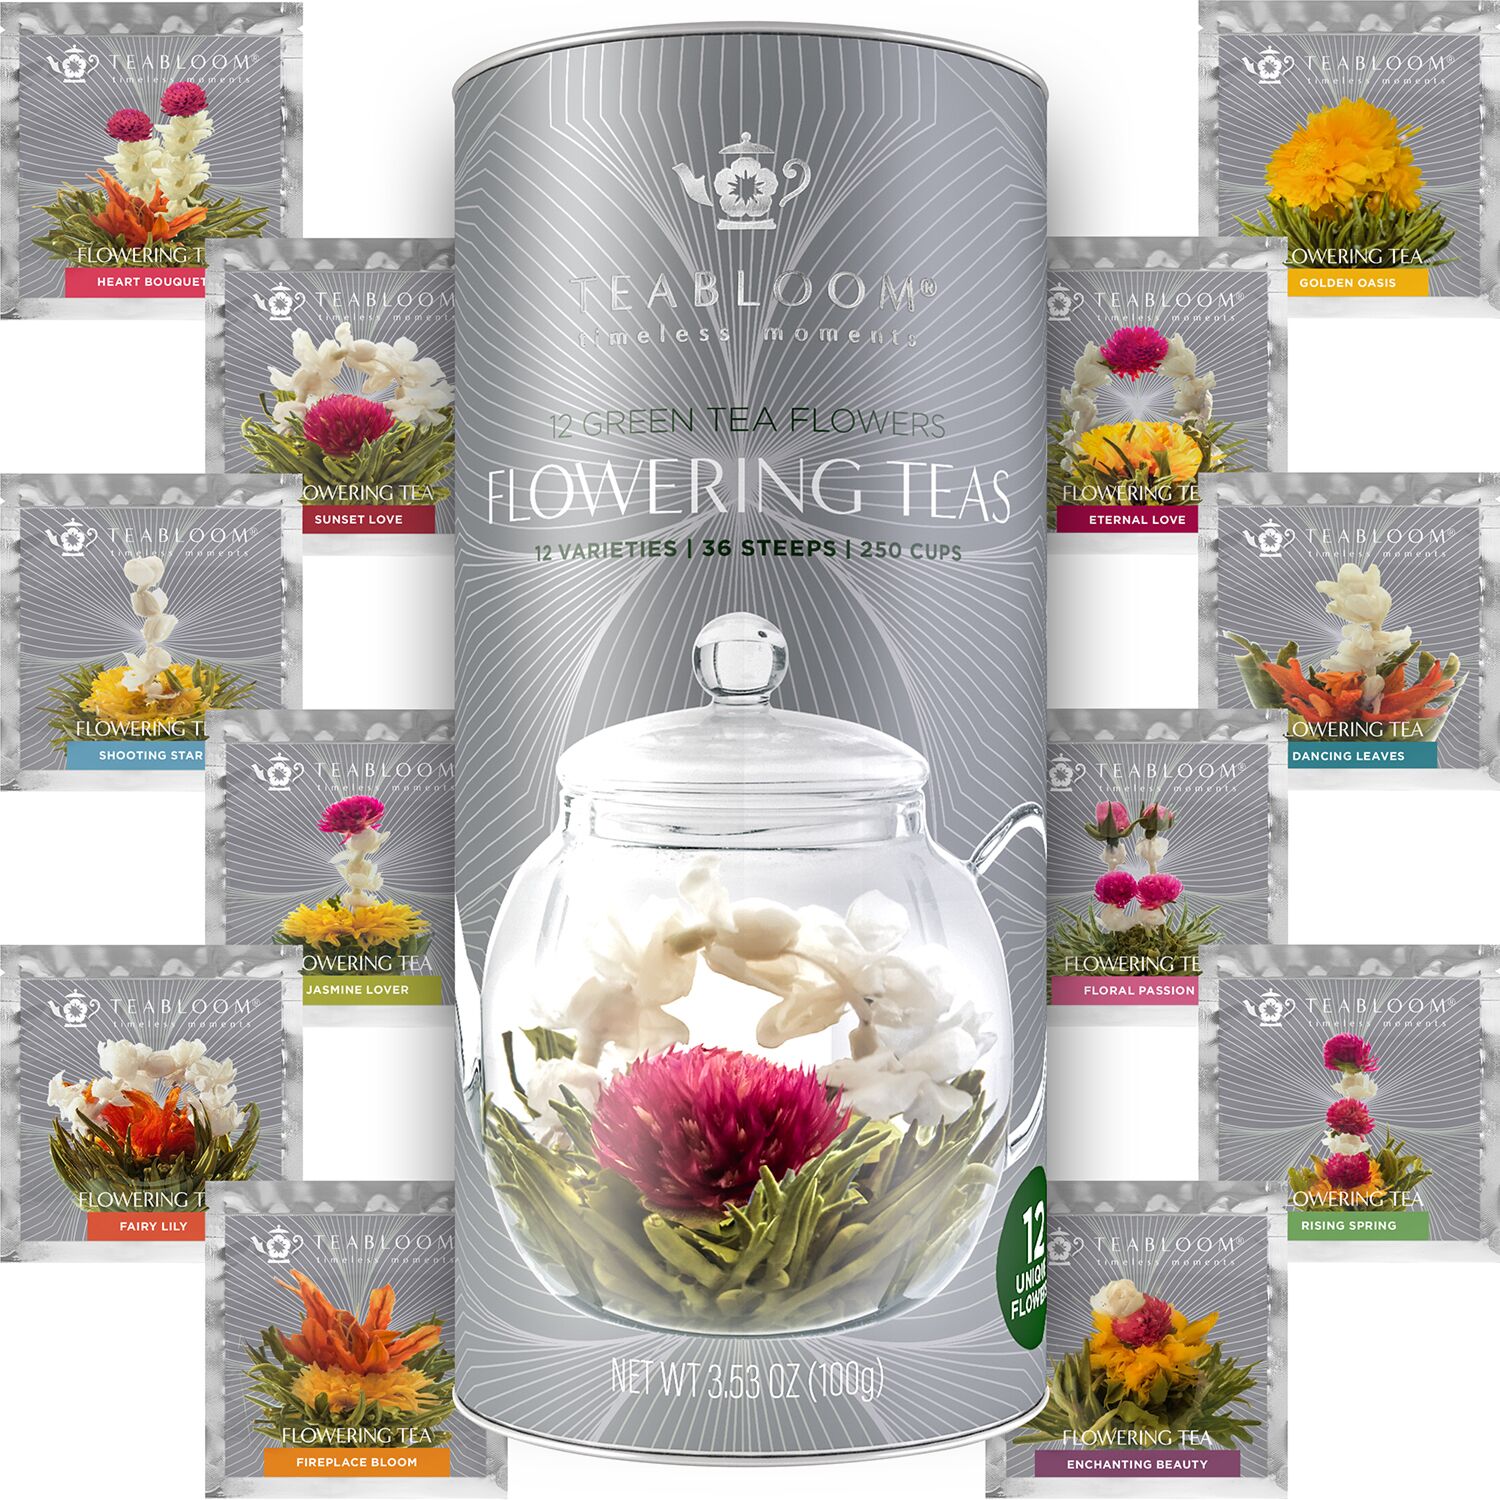 Teabloom Flowering Tea